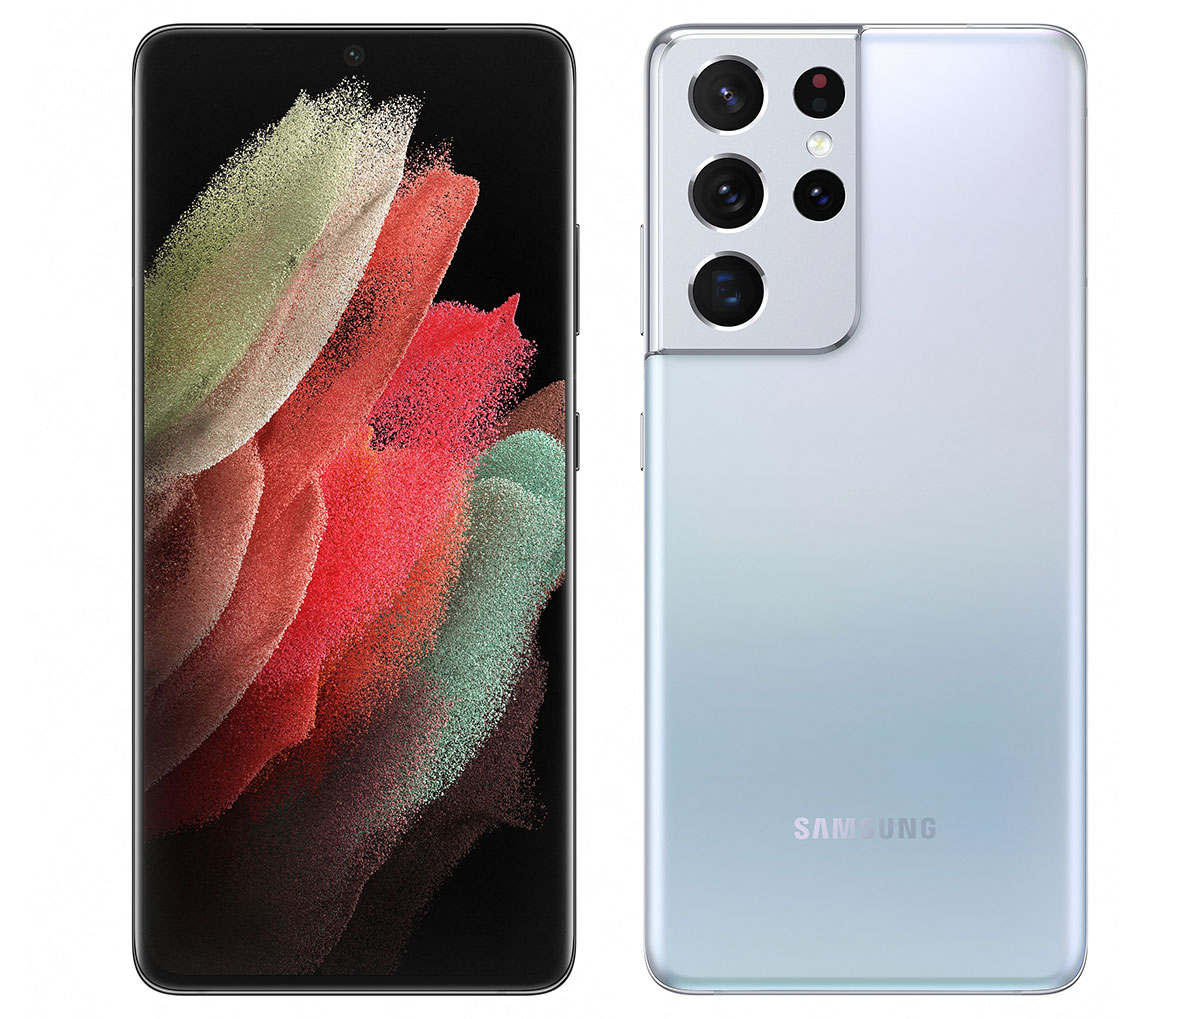 Samsung S21 Ultra : Caratteristiche e Opinioni | JuzaPhoto